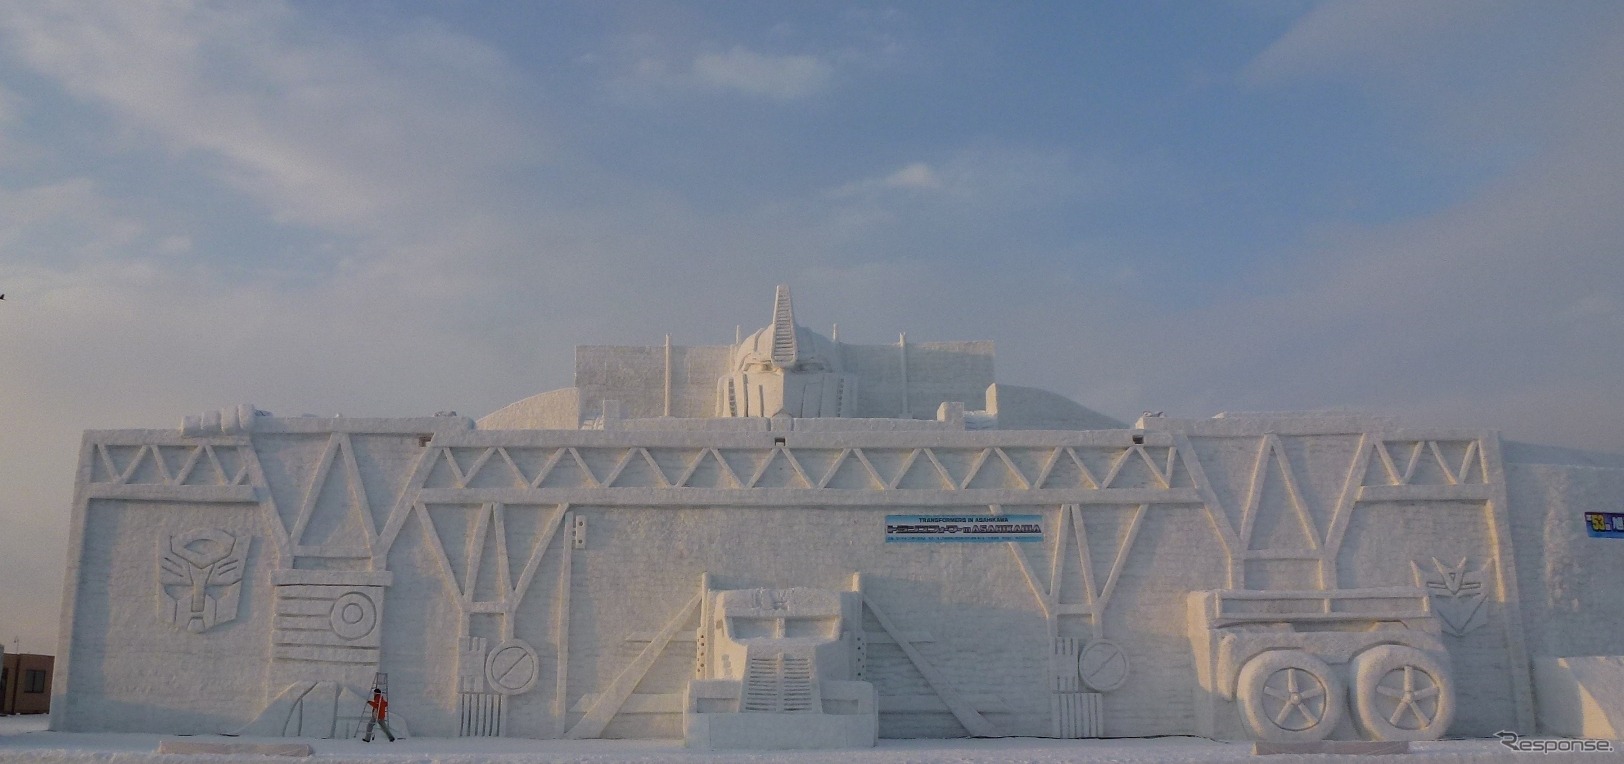 「トランスフォーマー」を模した世界最大級の雪像。7日、夕日が差す。